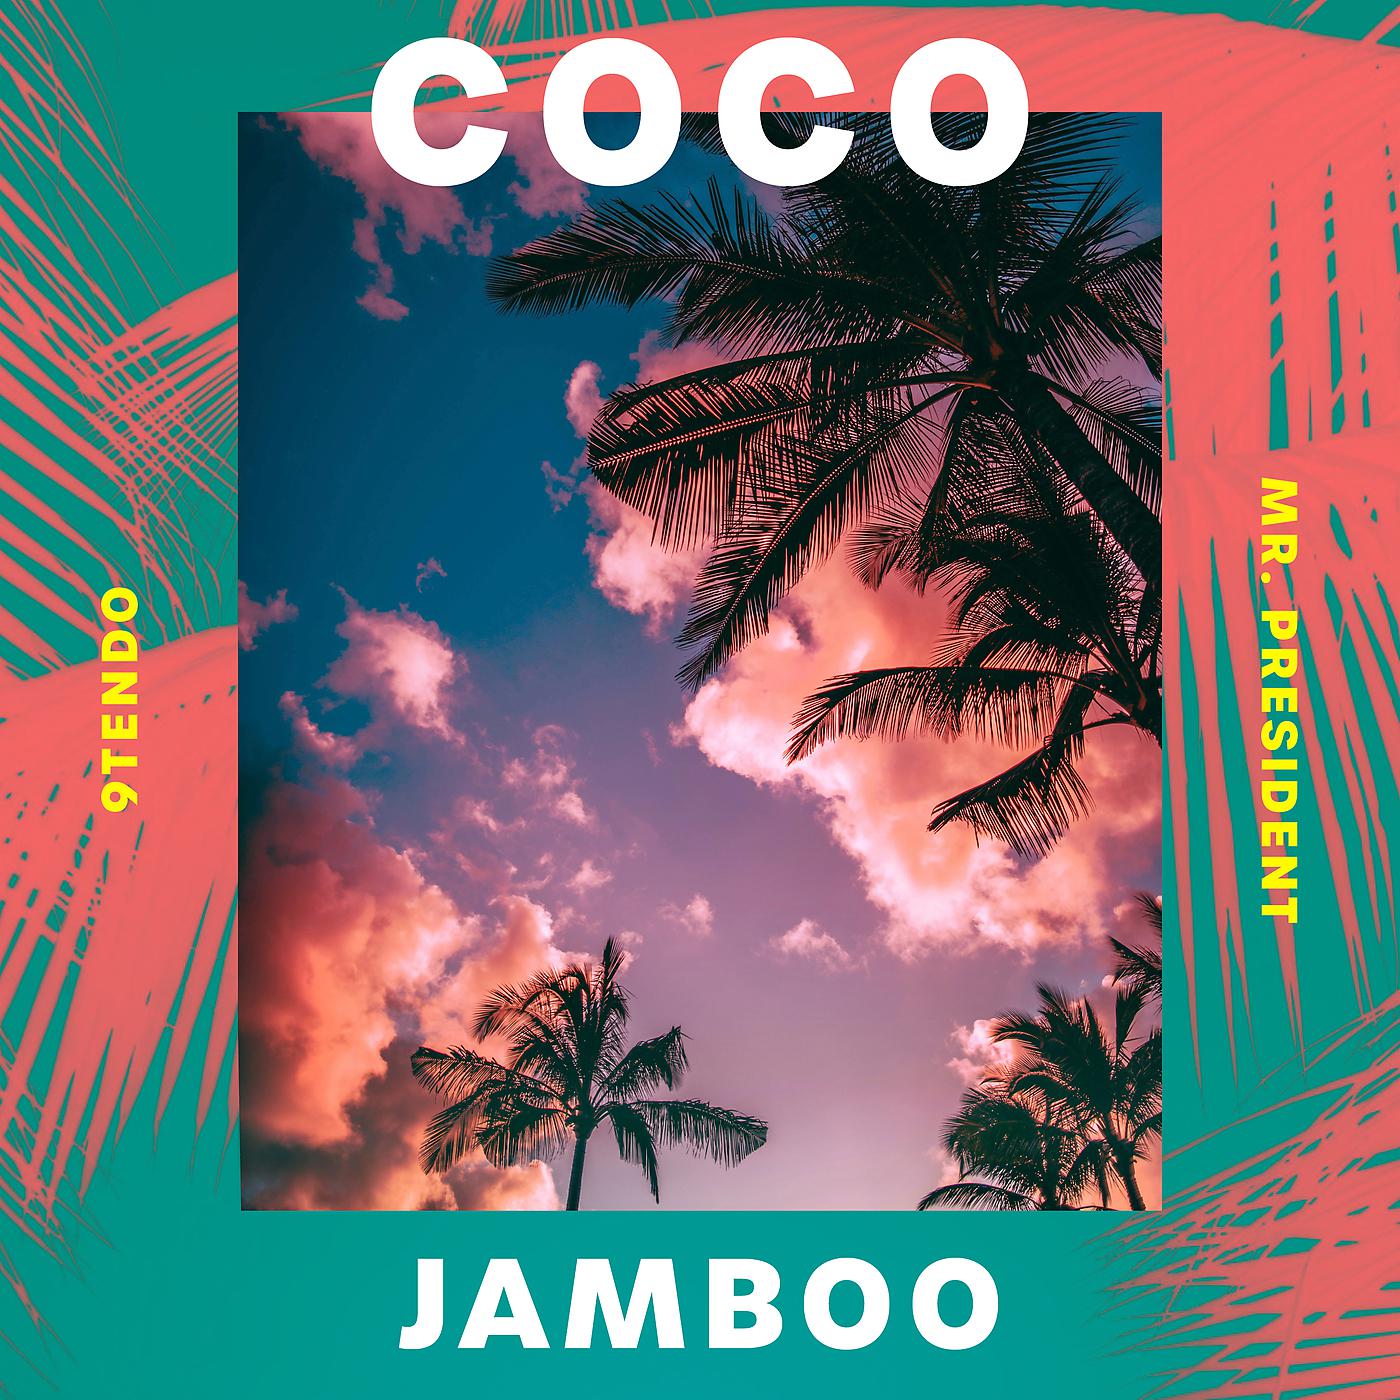 Коко жамбо. Mr President Coco. Mr President Coco Jambo. 9tendo, Mr. President - Coco Jamboo. Coco Jamboo Mr. President сингл.